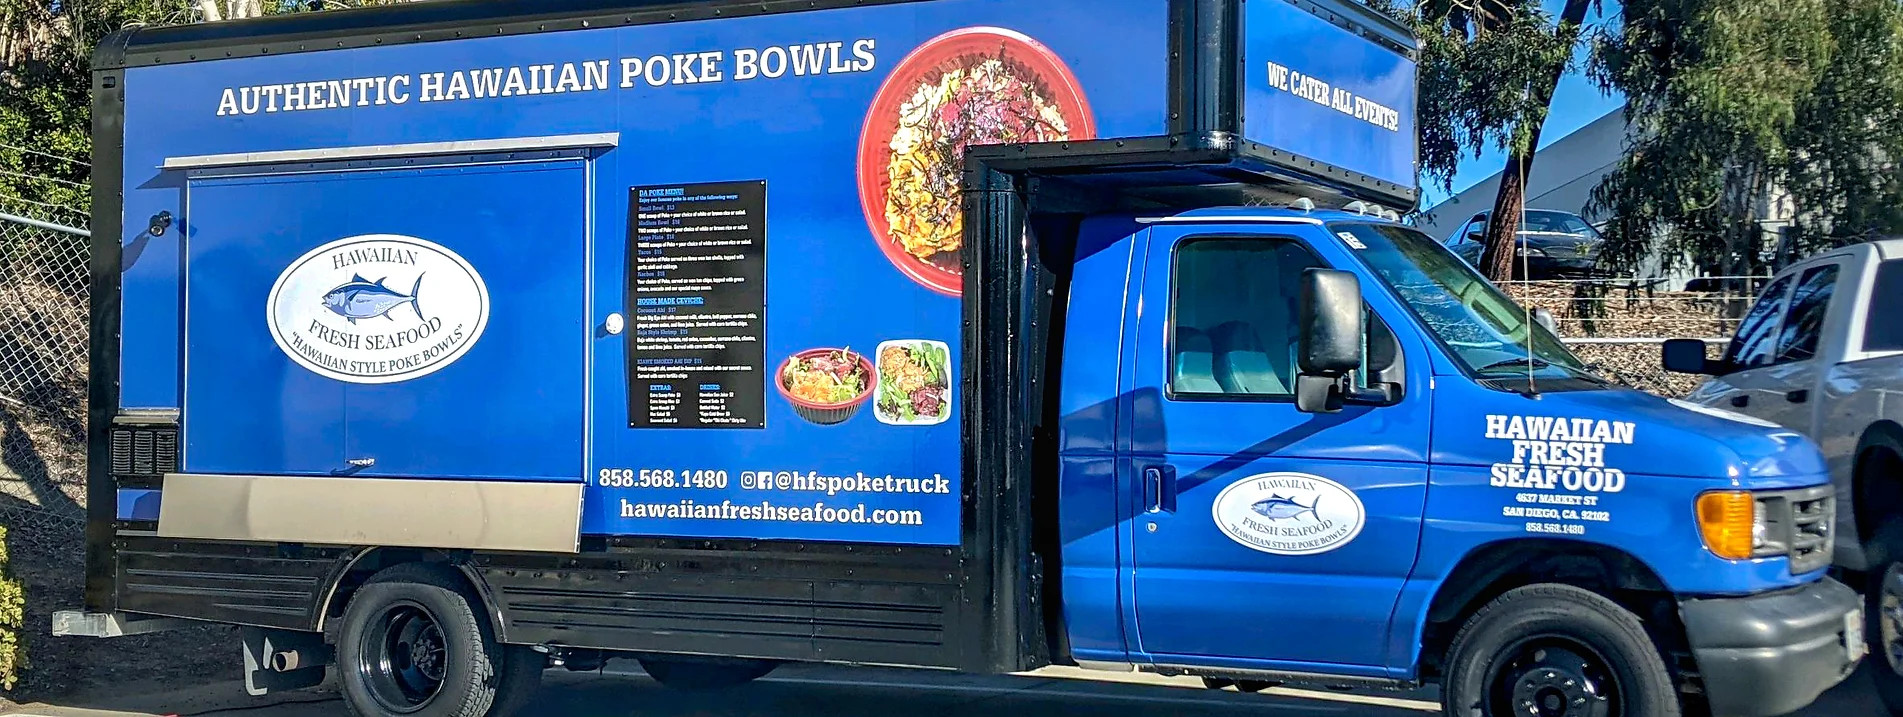 food truck ideas - hawaiian poke bowls